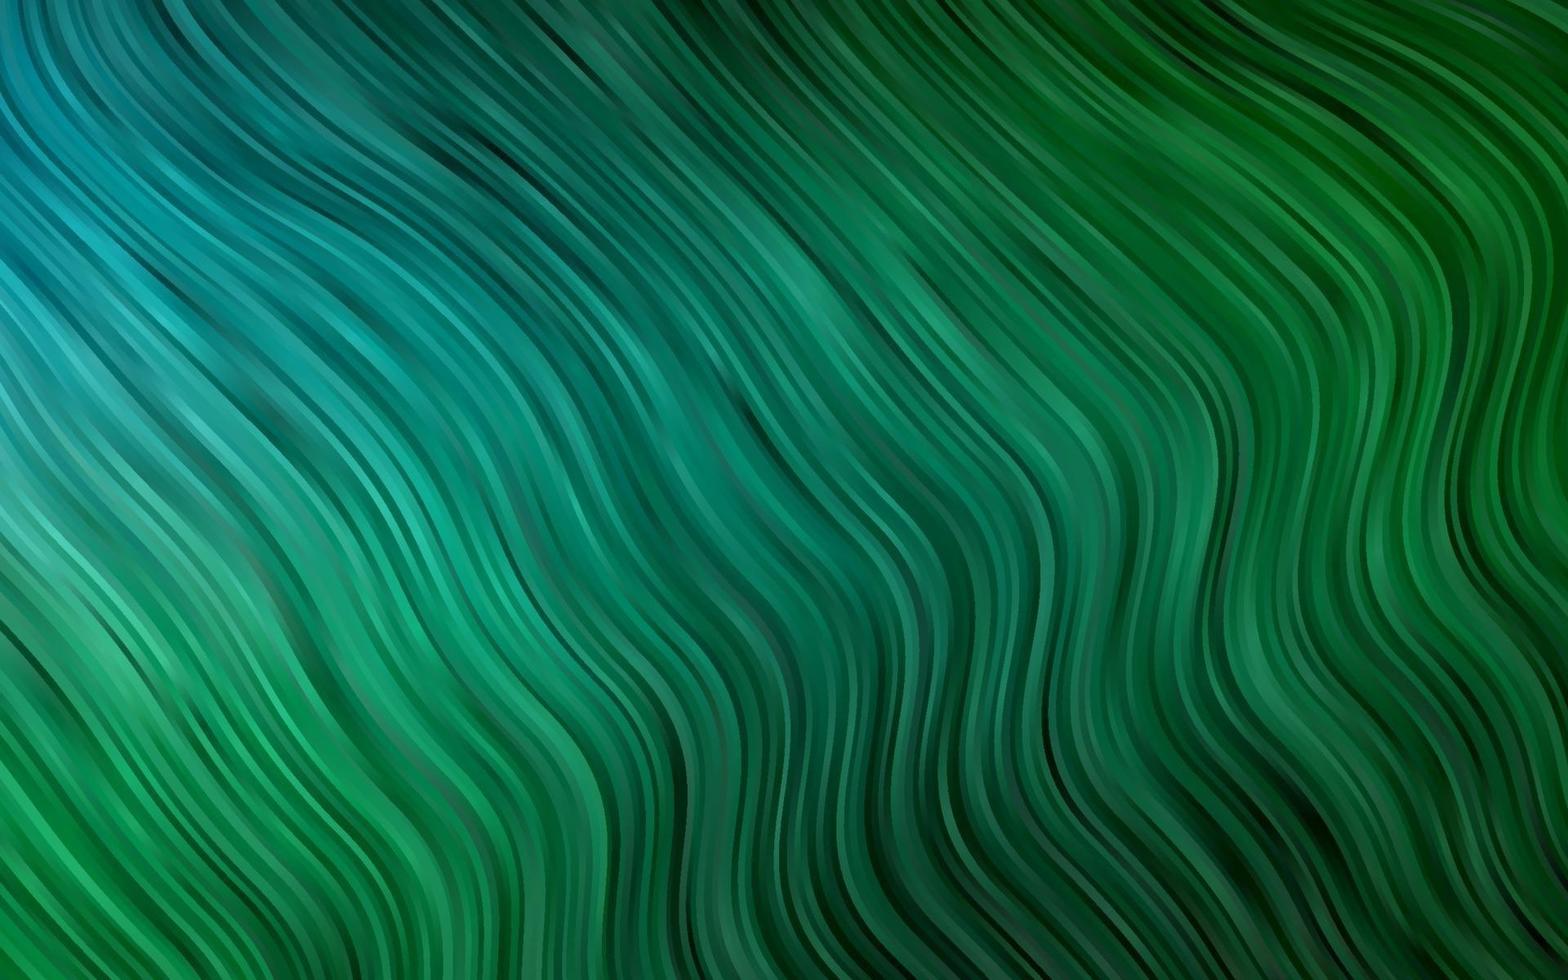 mörkblå, grön vektormall med böjda band. vektor